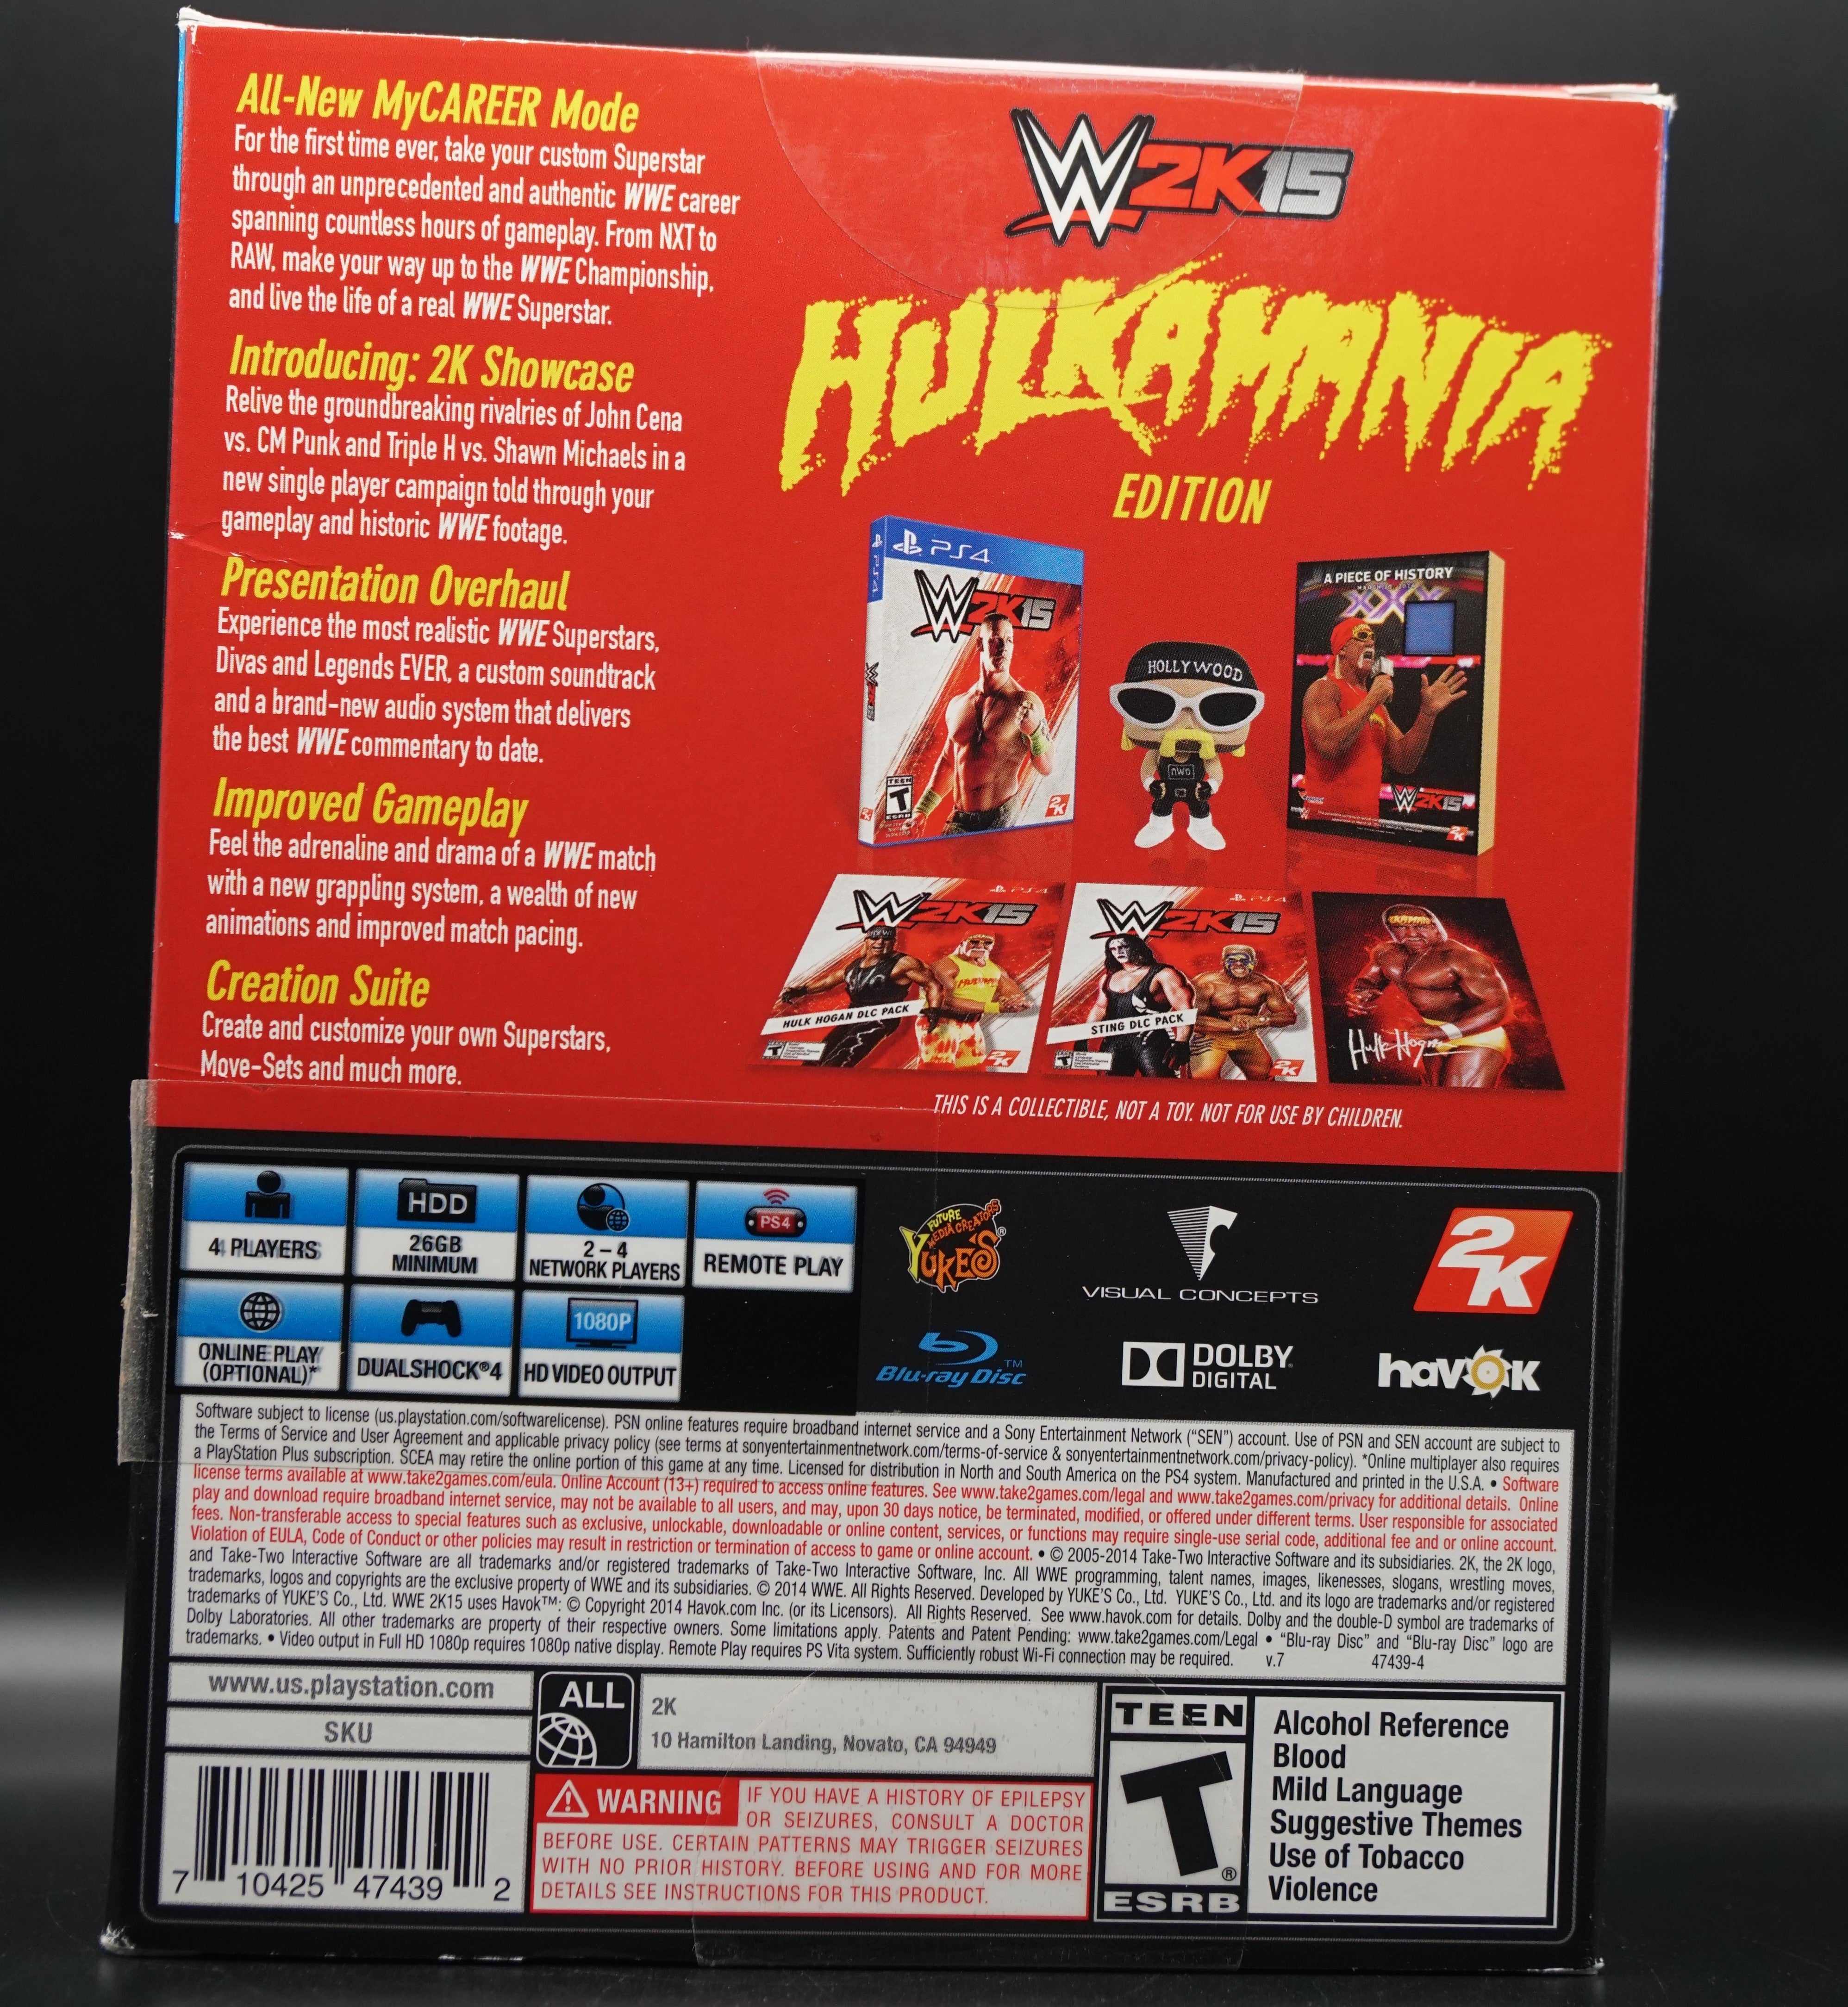 WWE 2K5 HULKAMANIA Edition Sony Playstation 4 PSA COA - Signed by Hollywood Hulk Hogan